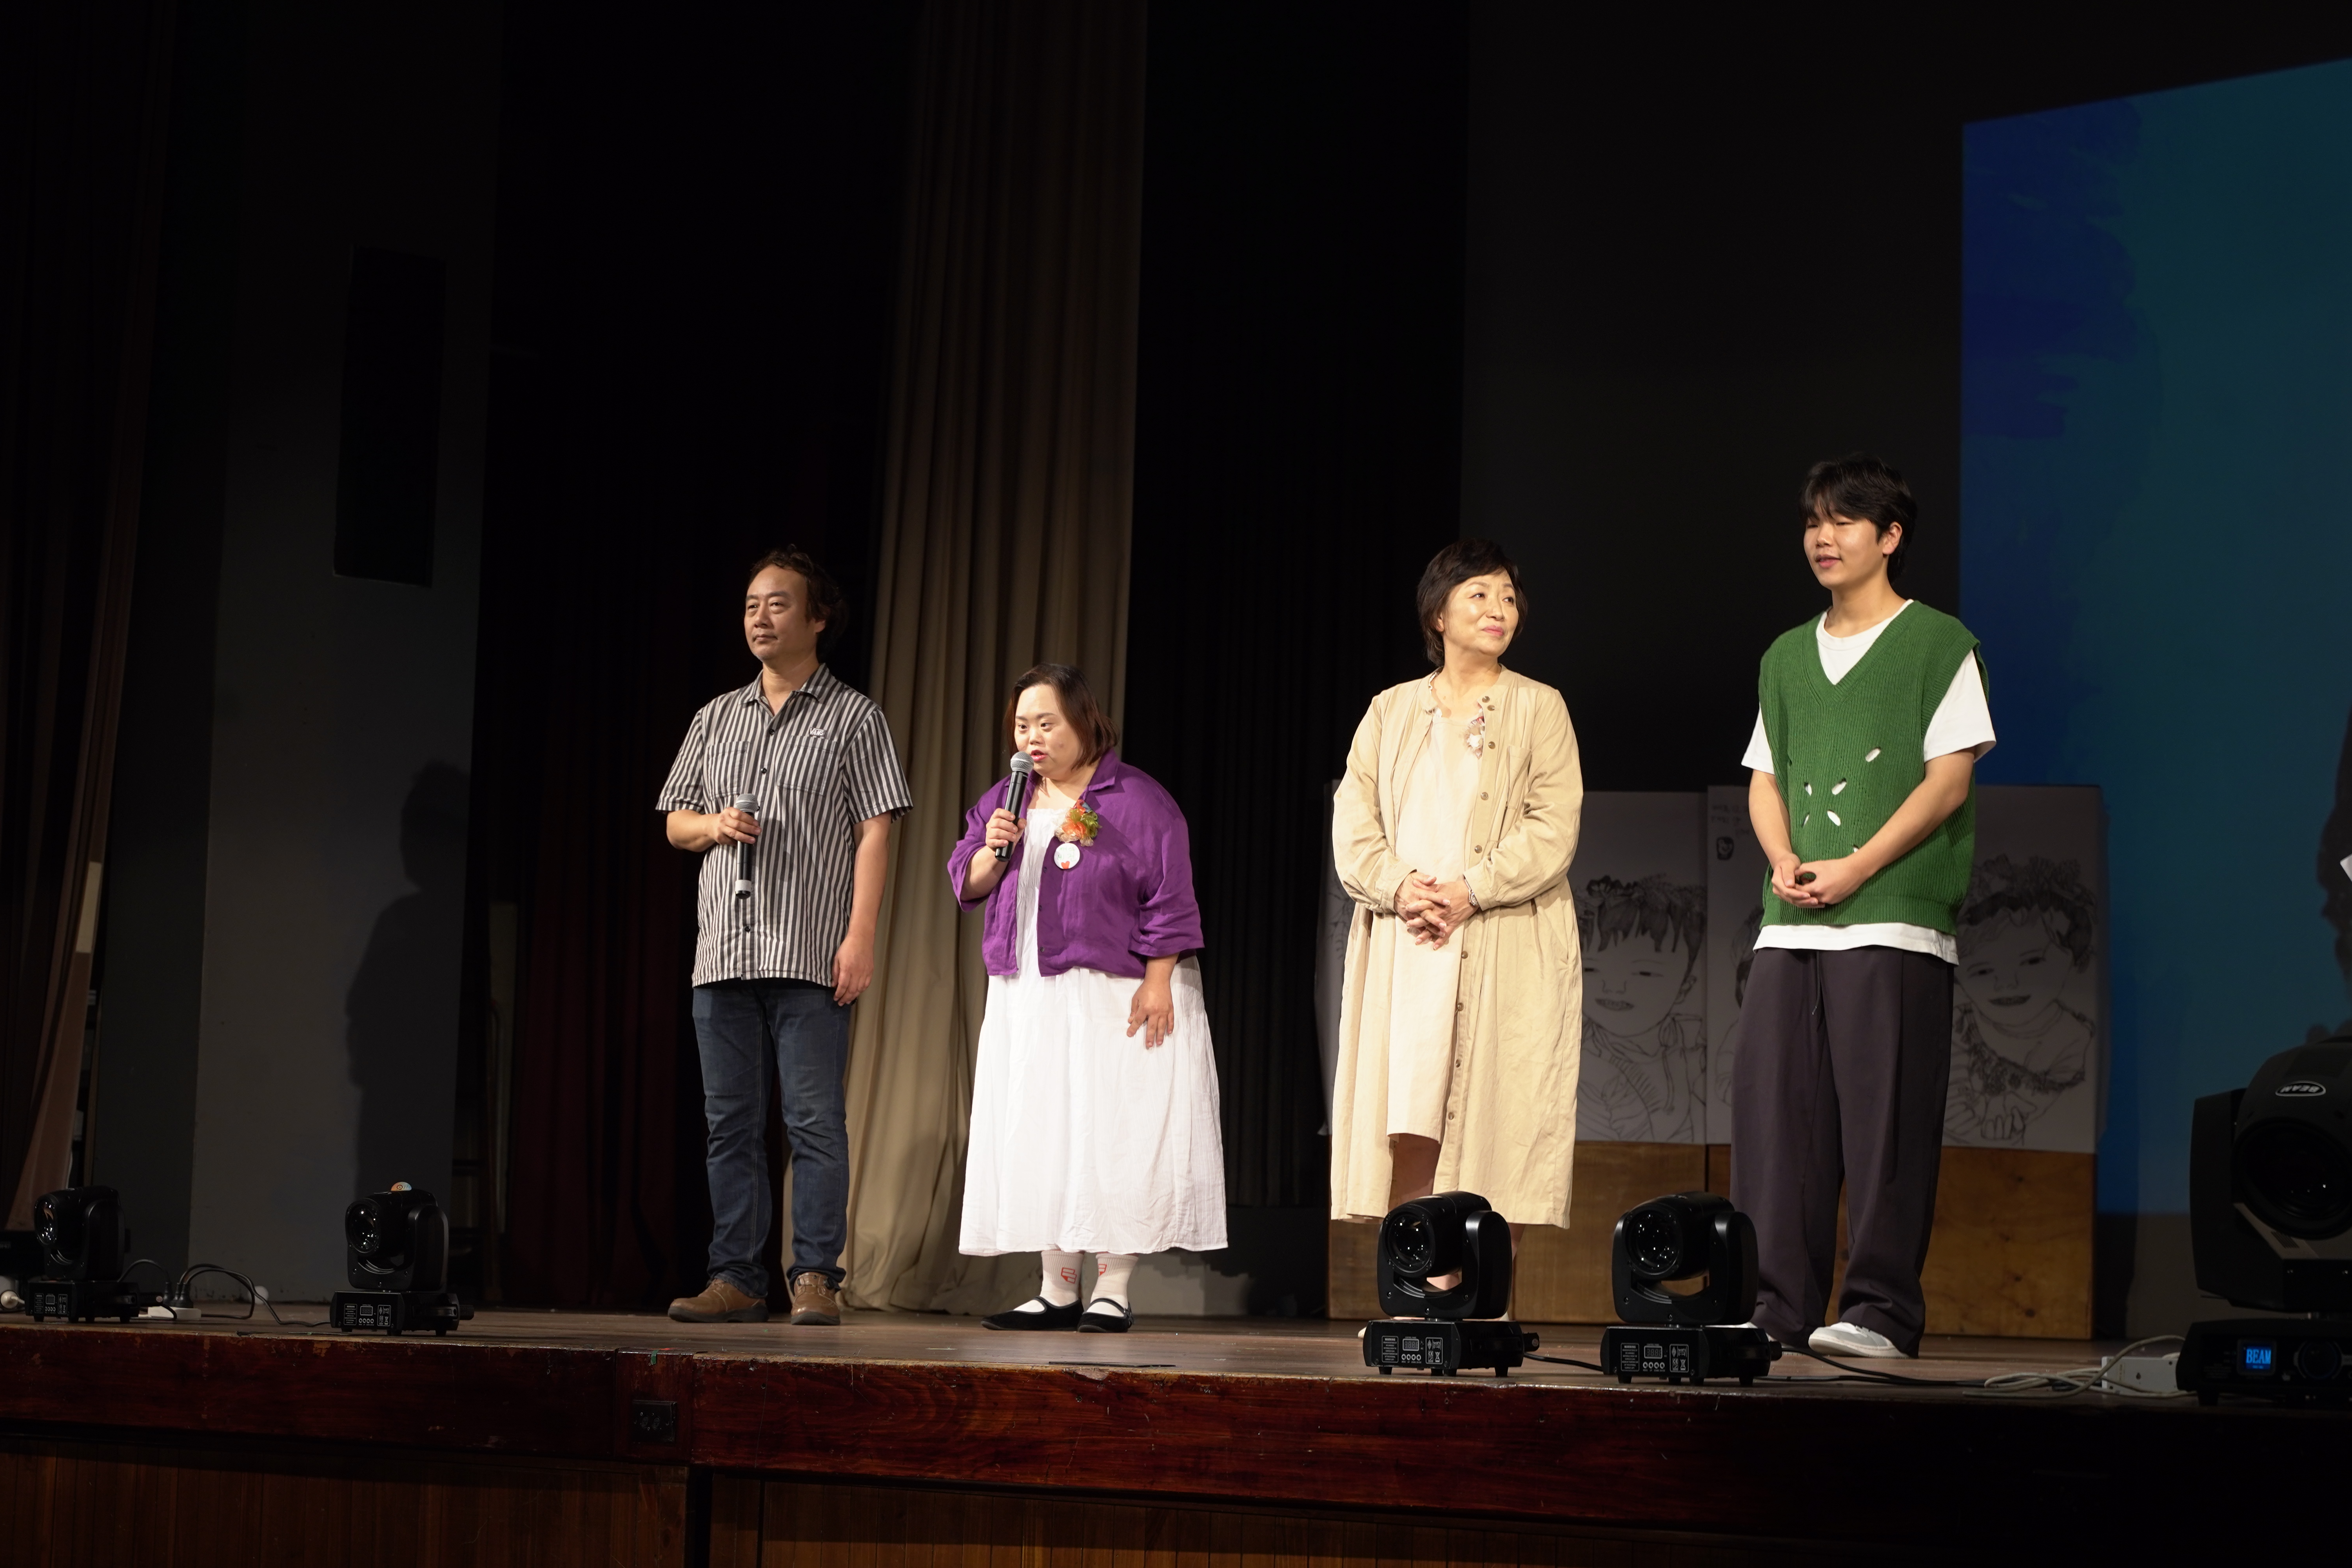 무대에서 관객들에게 인사를 하고 있는 정은혜 작가와 가족들 - 출처: 통신원 촬영